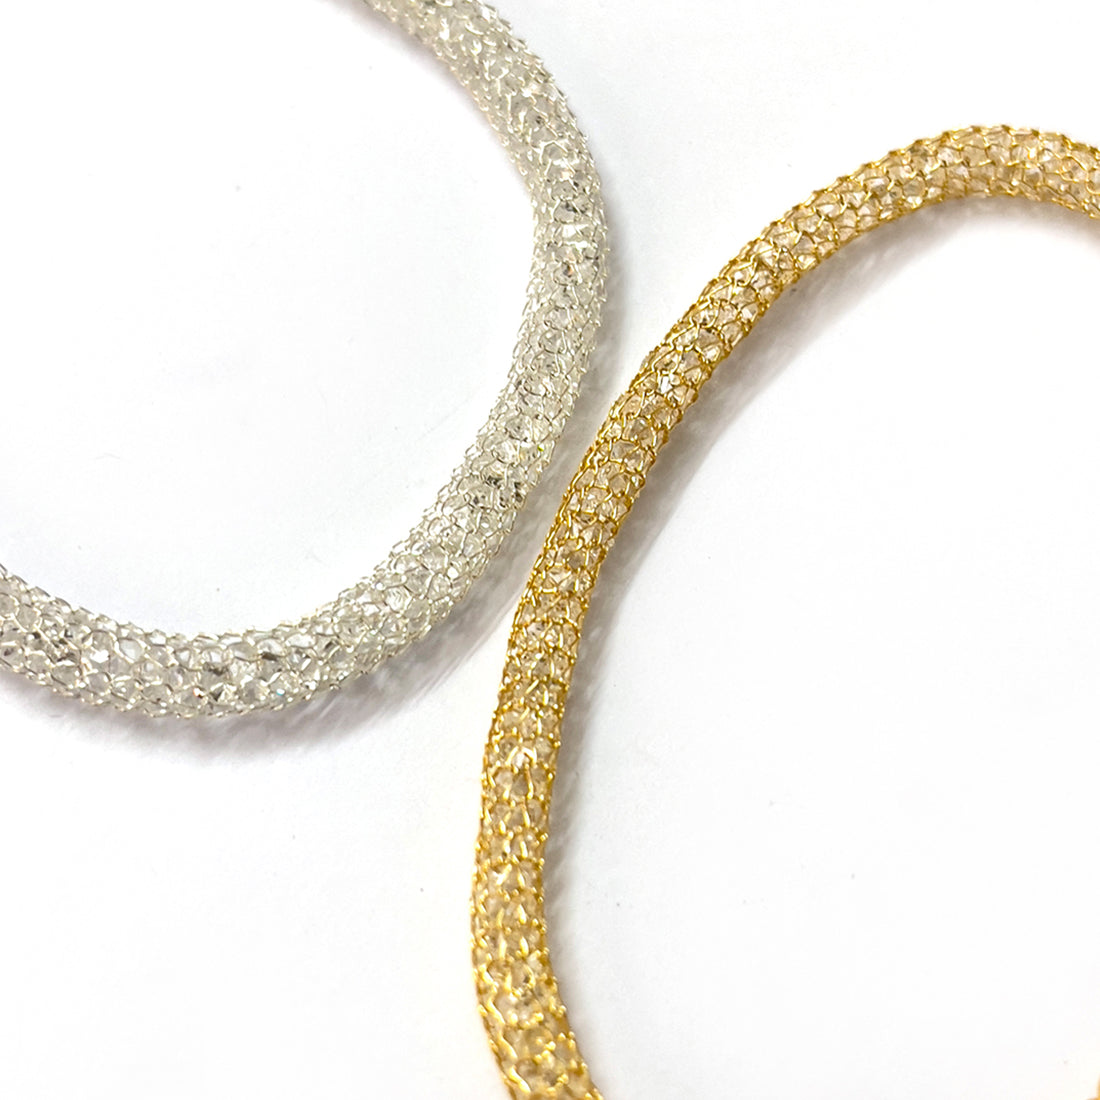 Sparkling Set Of 2 Metallic Mesh Silver And Gold Adjustable Bracelets